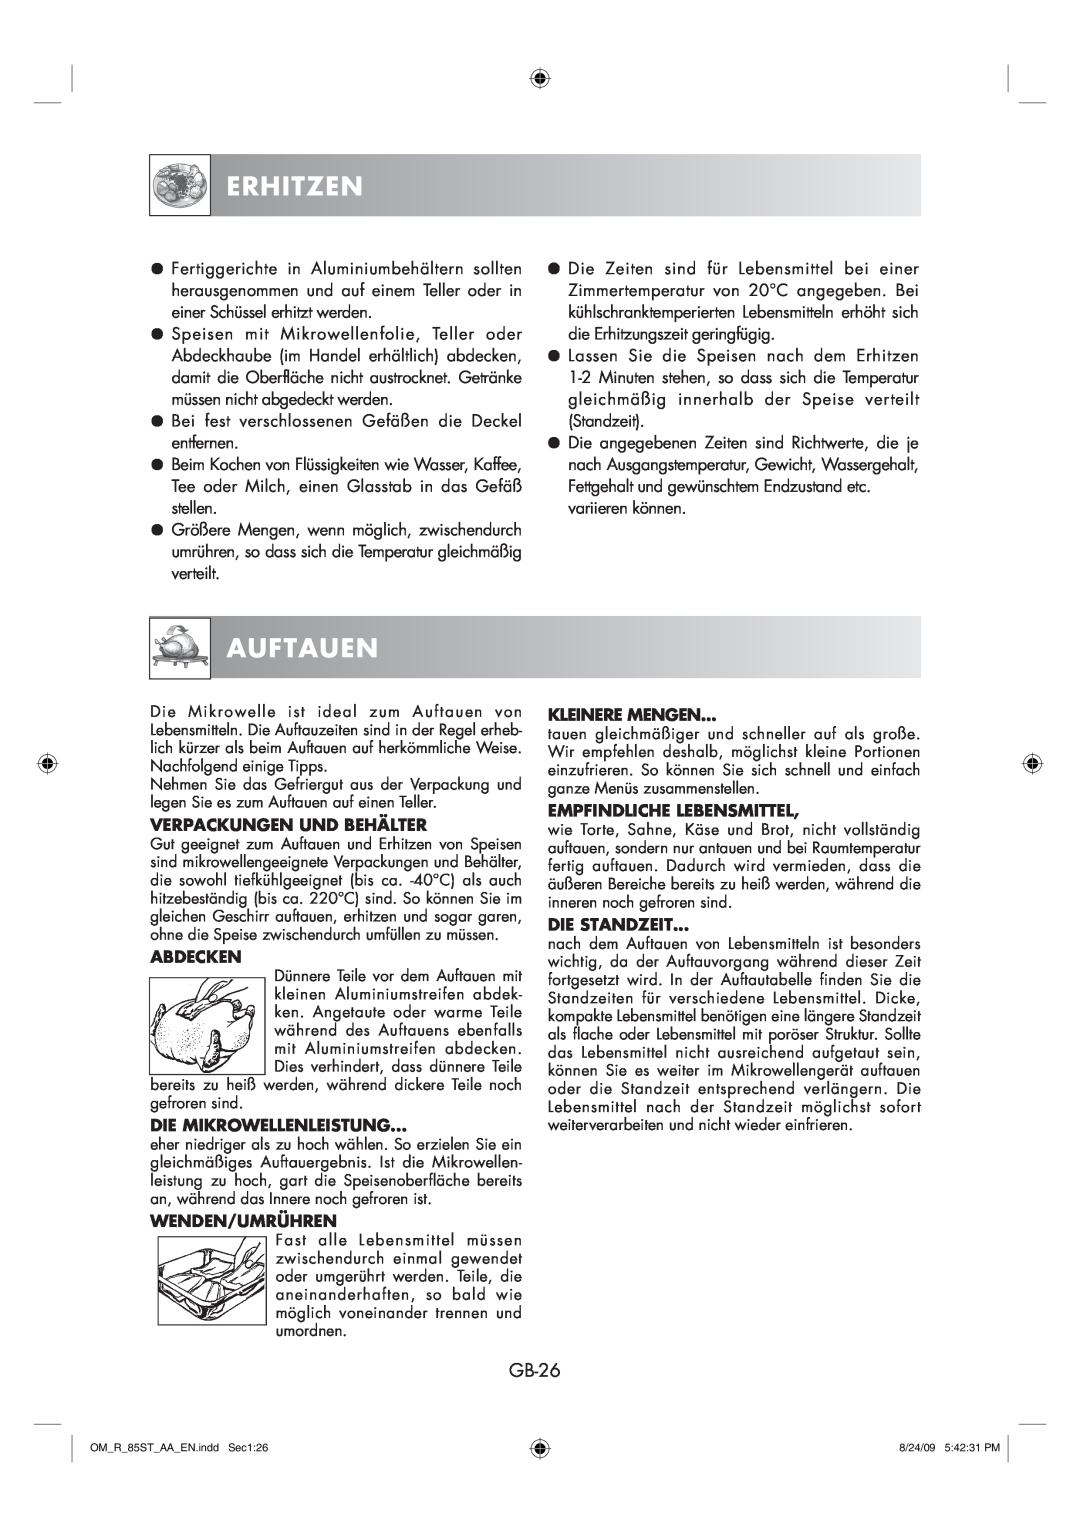 Sharp R-85ST-AA operation manual Erhitzen, Auftauen, GB-26 